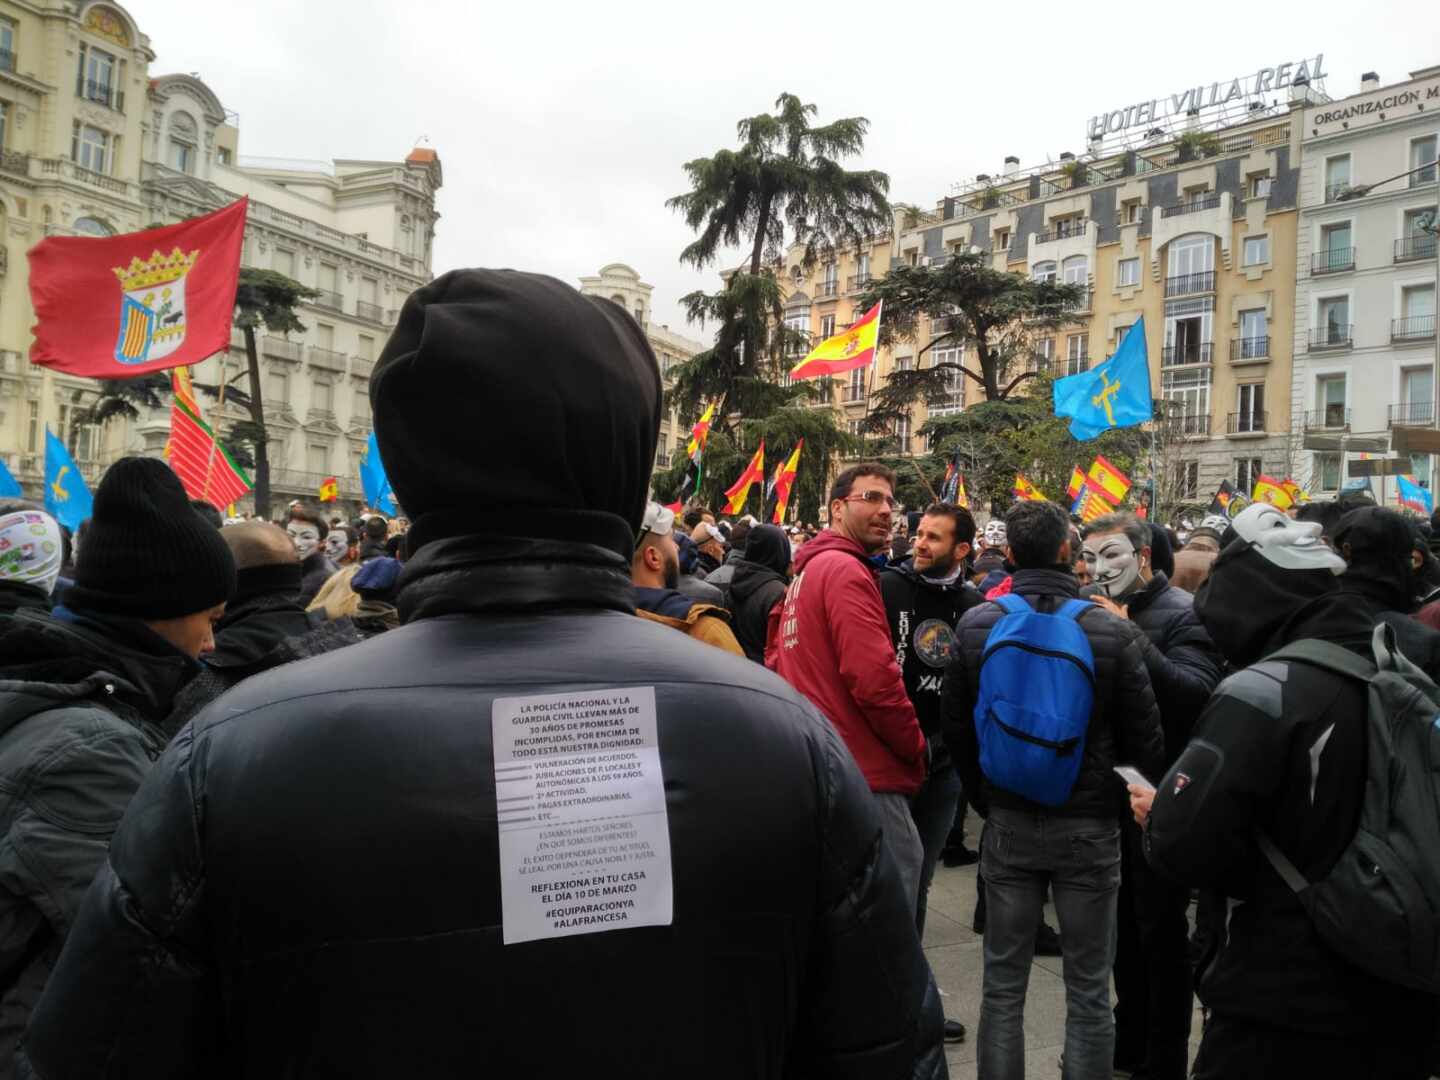 Un manifestante en la concentración convocada por Jusapol, con la octavilla que llama a 'reflexionar en casa' el 10 de marzo.